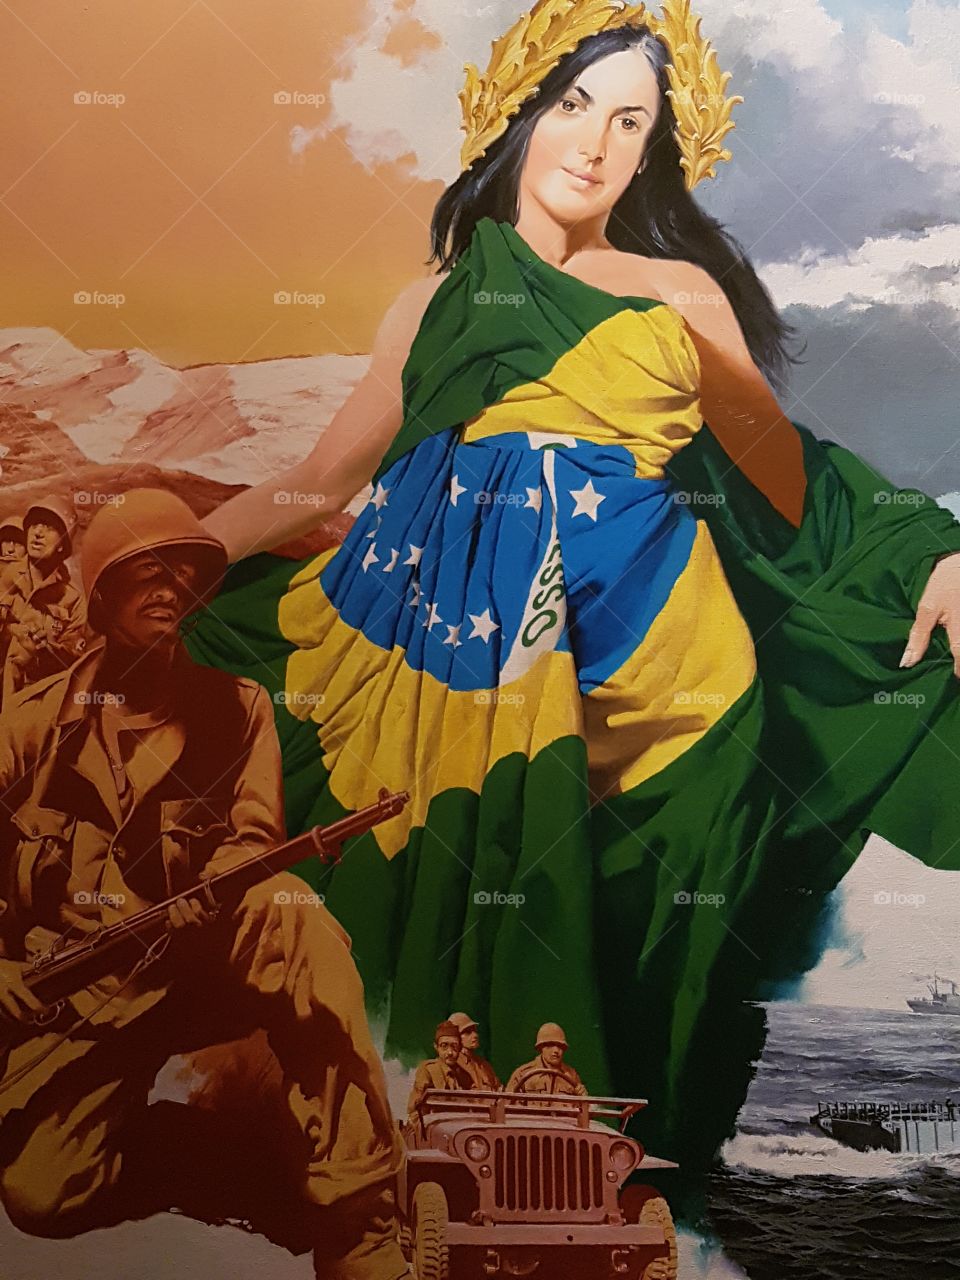 "...És mãe gentil, pátria amada Brasil".